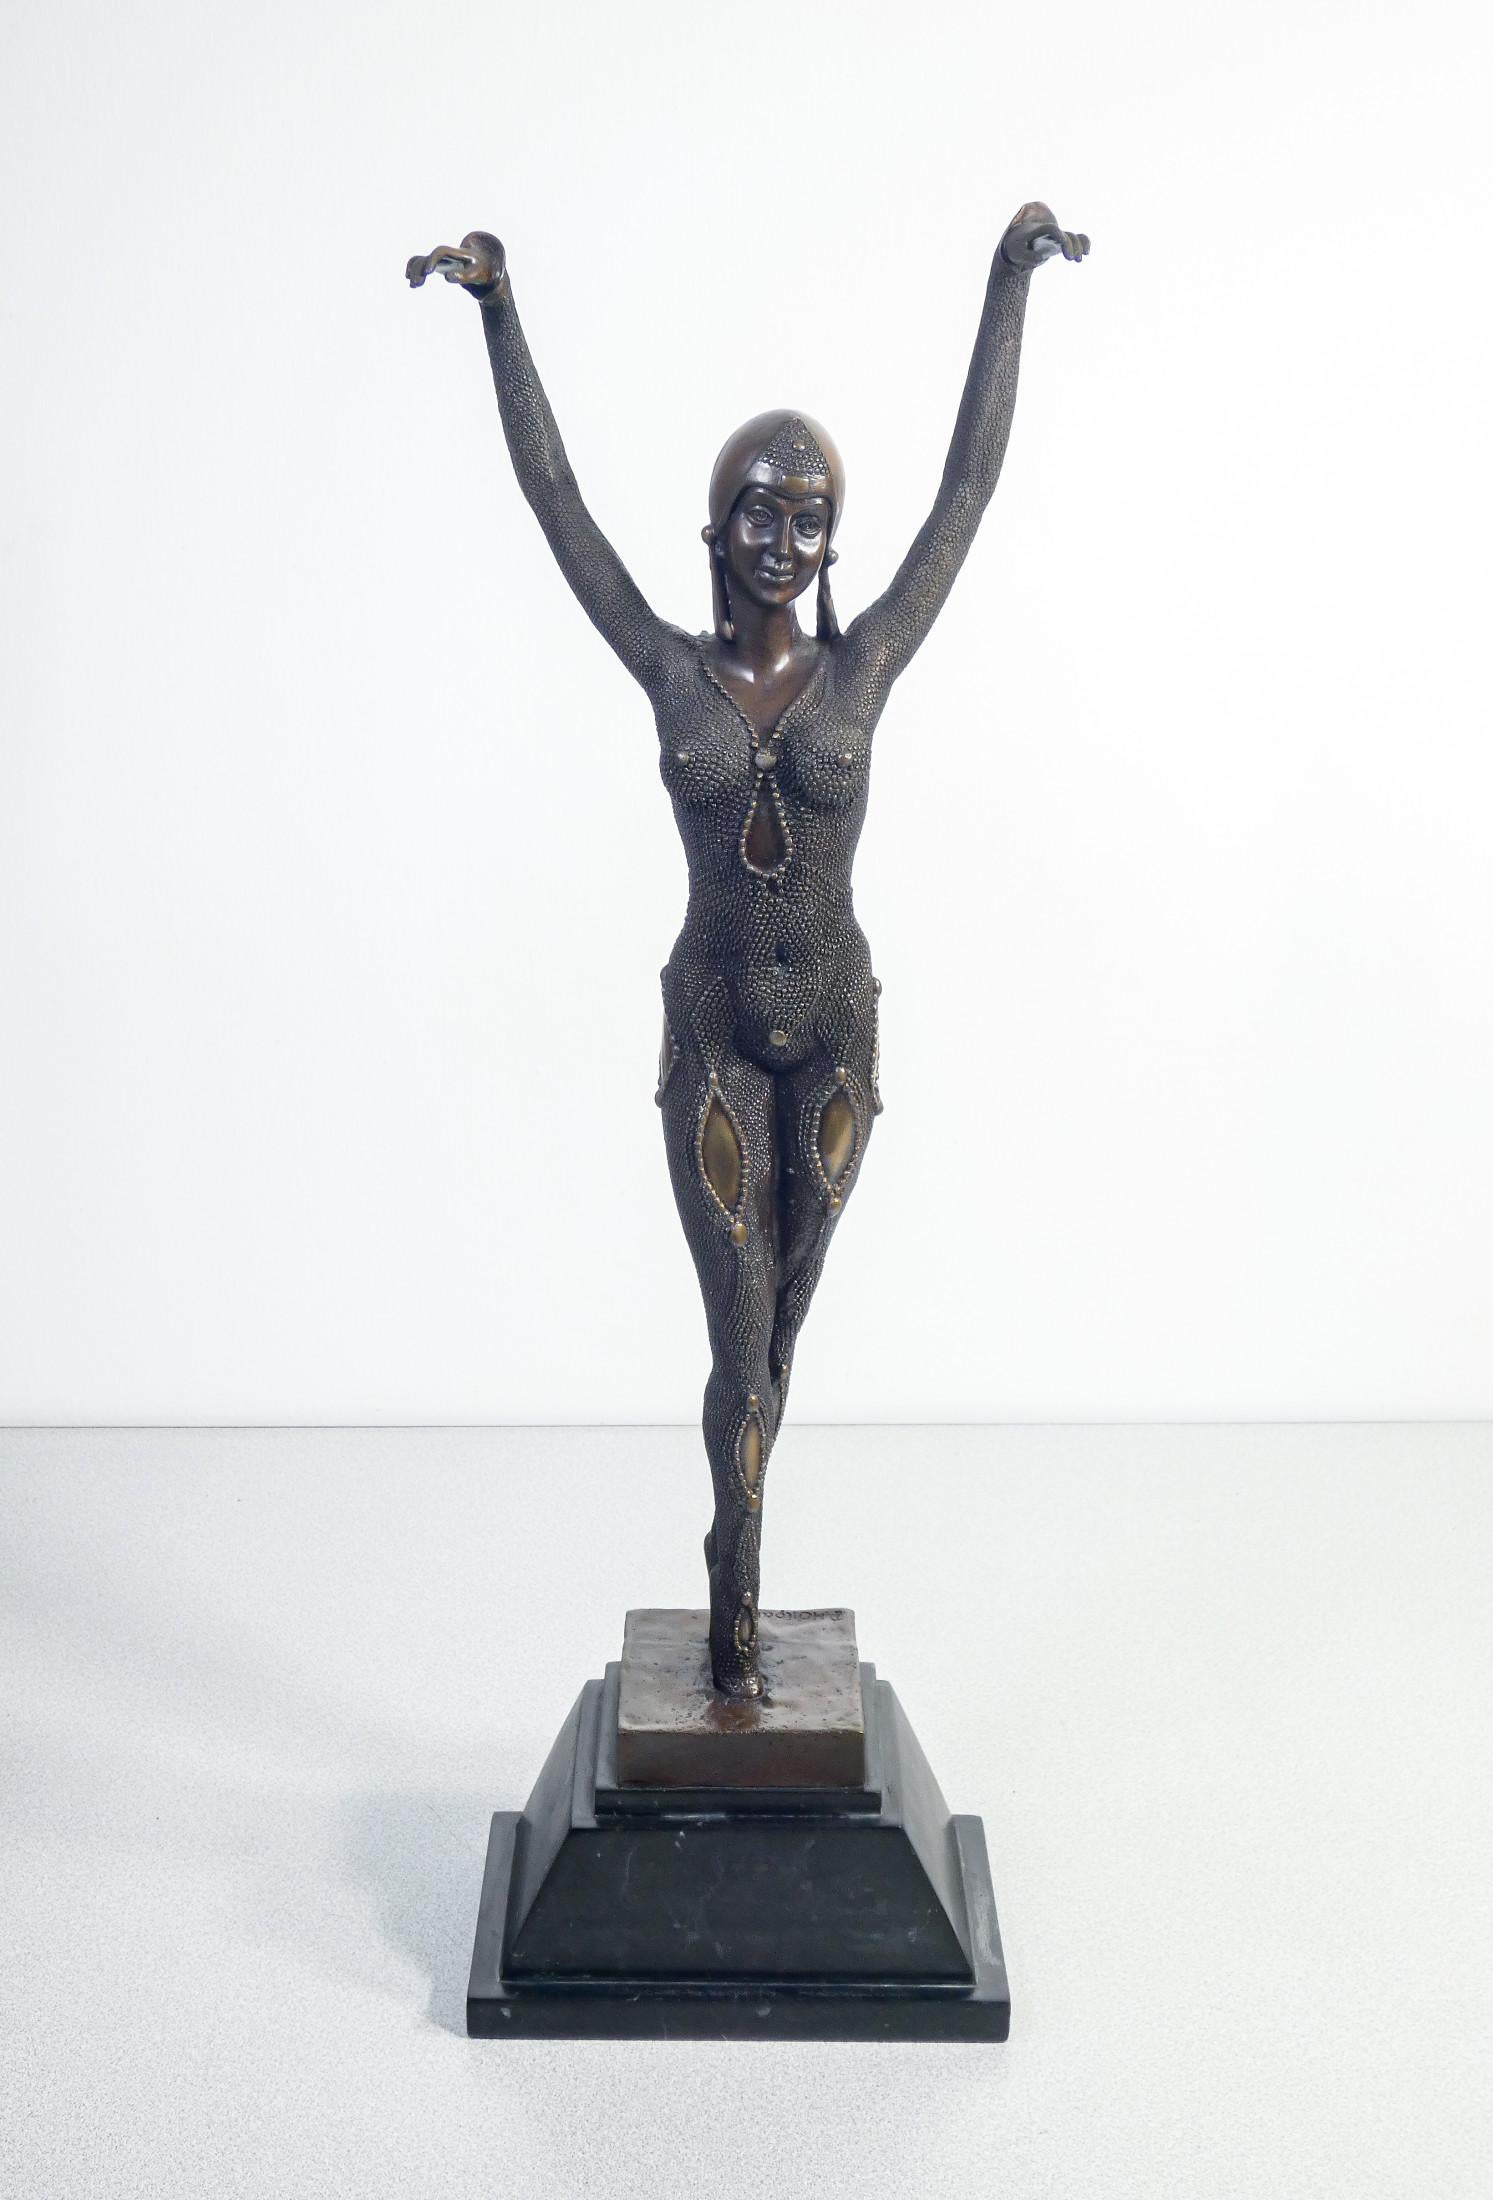 Sculpture copy
in bronze by
Demetre CHIPARUS,
Dancer.
Art Deco.

PERIOD
Early twentieth century

AUTHOR
Copy from Demétre
Haralamb CHIPARUS
(1886 – 1947)

MATERIALS
Bronze.
Marble base

DIMENSIONS
H 64.5 cm
W 21cm
P 12 cm

CONDITIONS
Excellent.